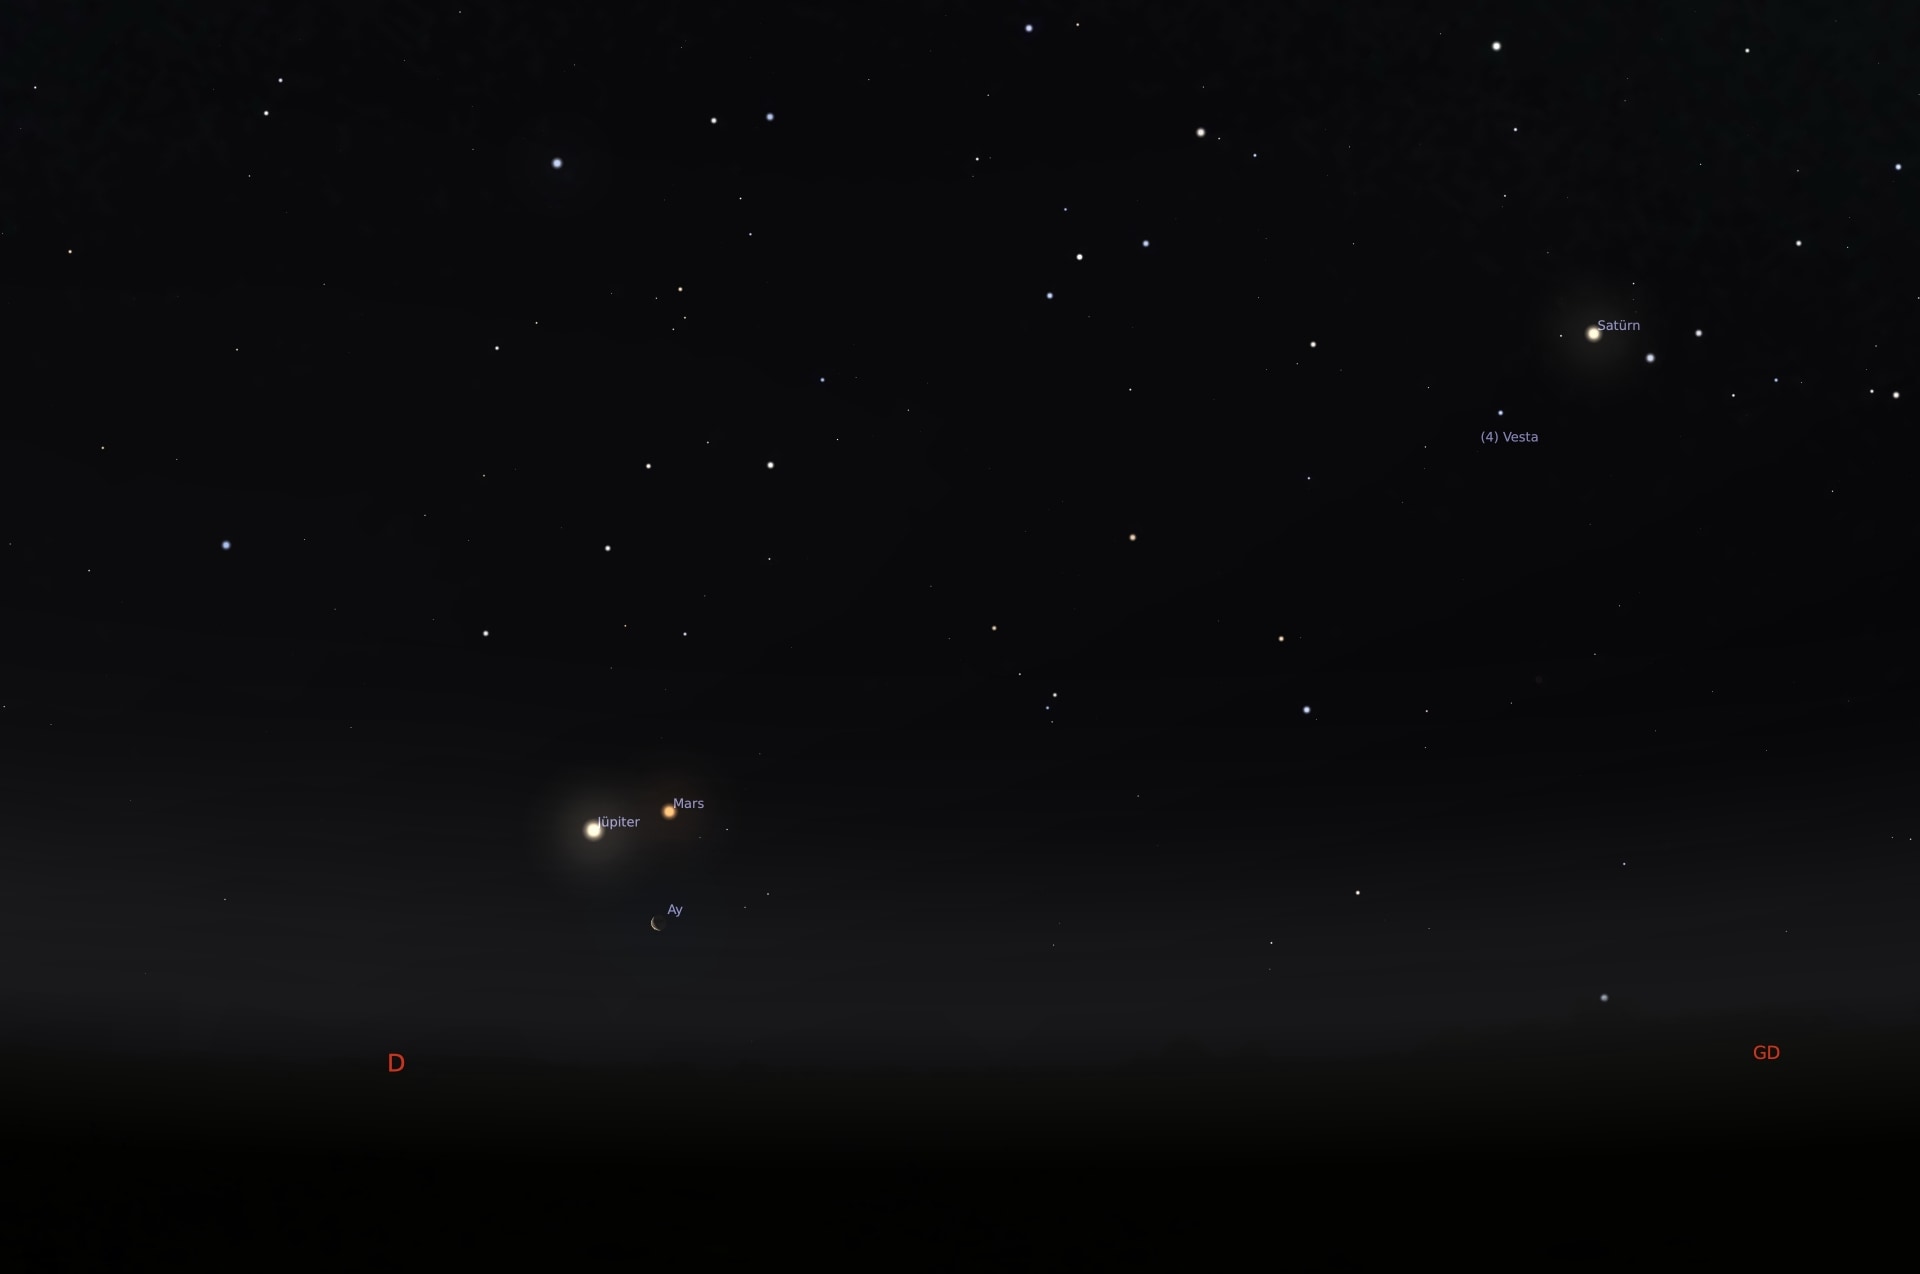 25mayis Venüs ve Mars Jüpiter’in dibinden geçiyor!